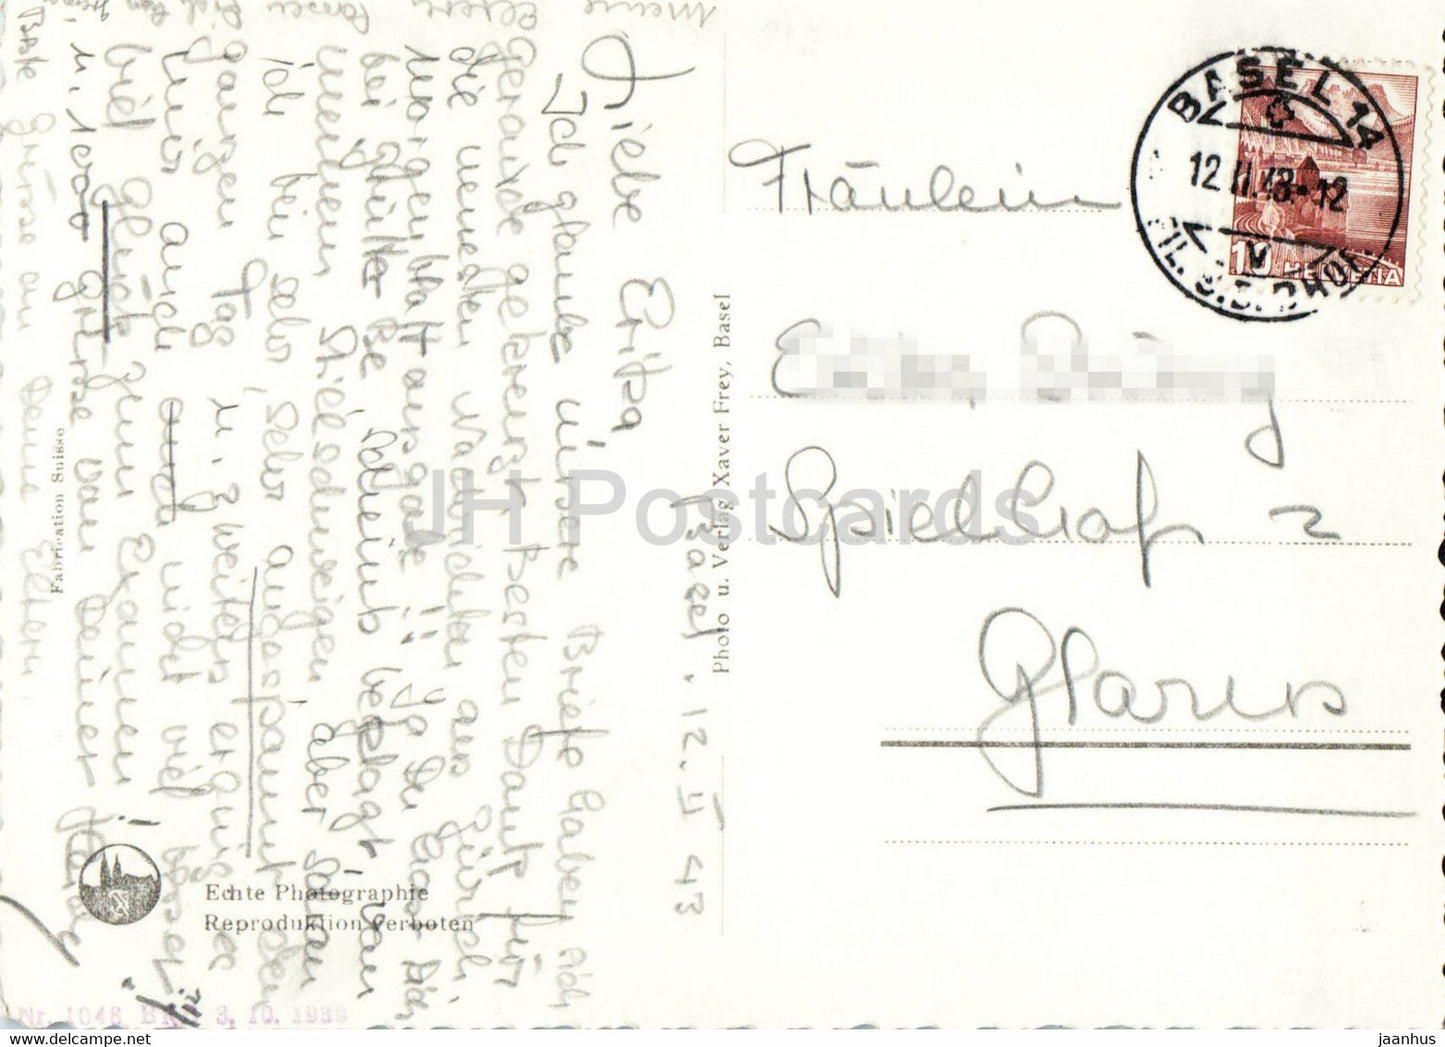 Basel - Die drei Rheinbrucken und Munsterturm - cathedral - 547 - old postcard - 1943 - Switzerland - used